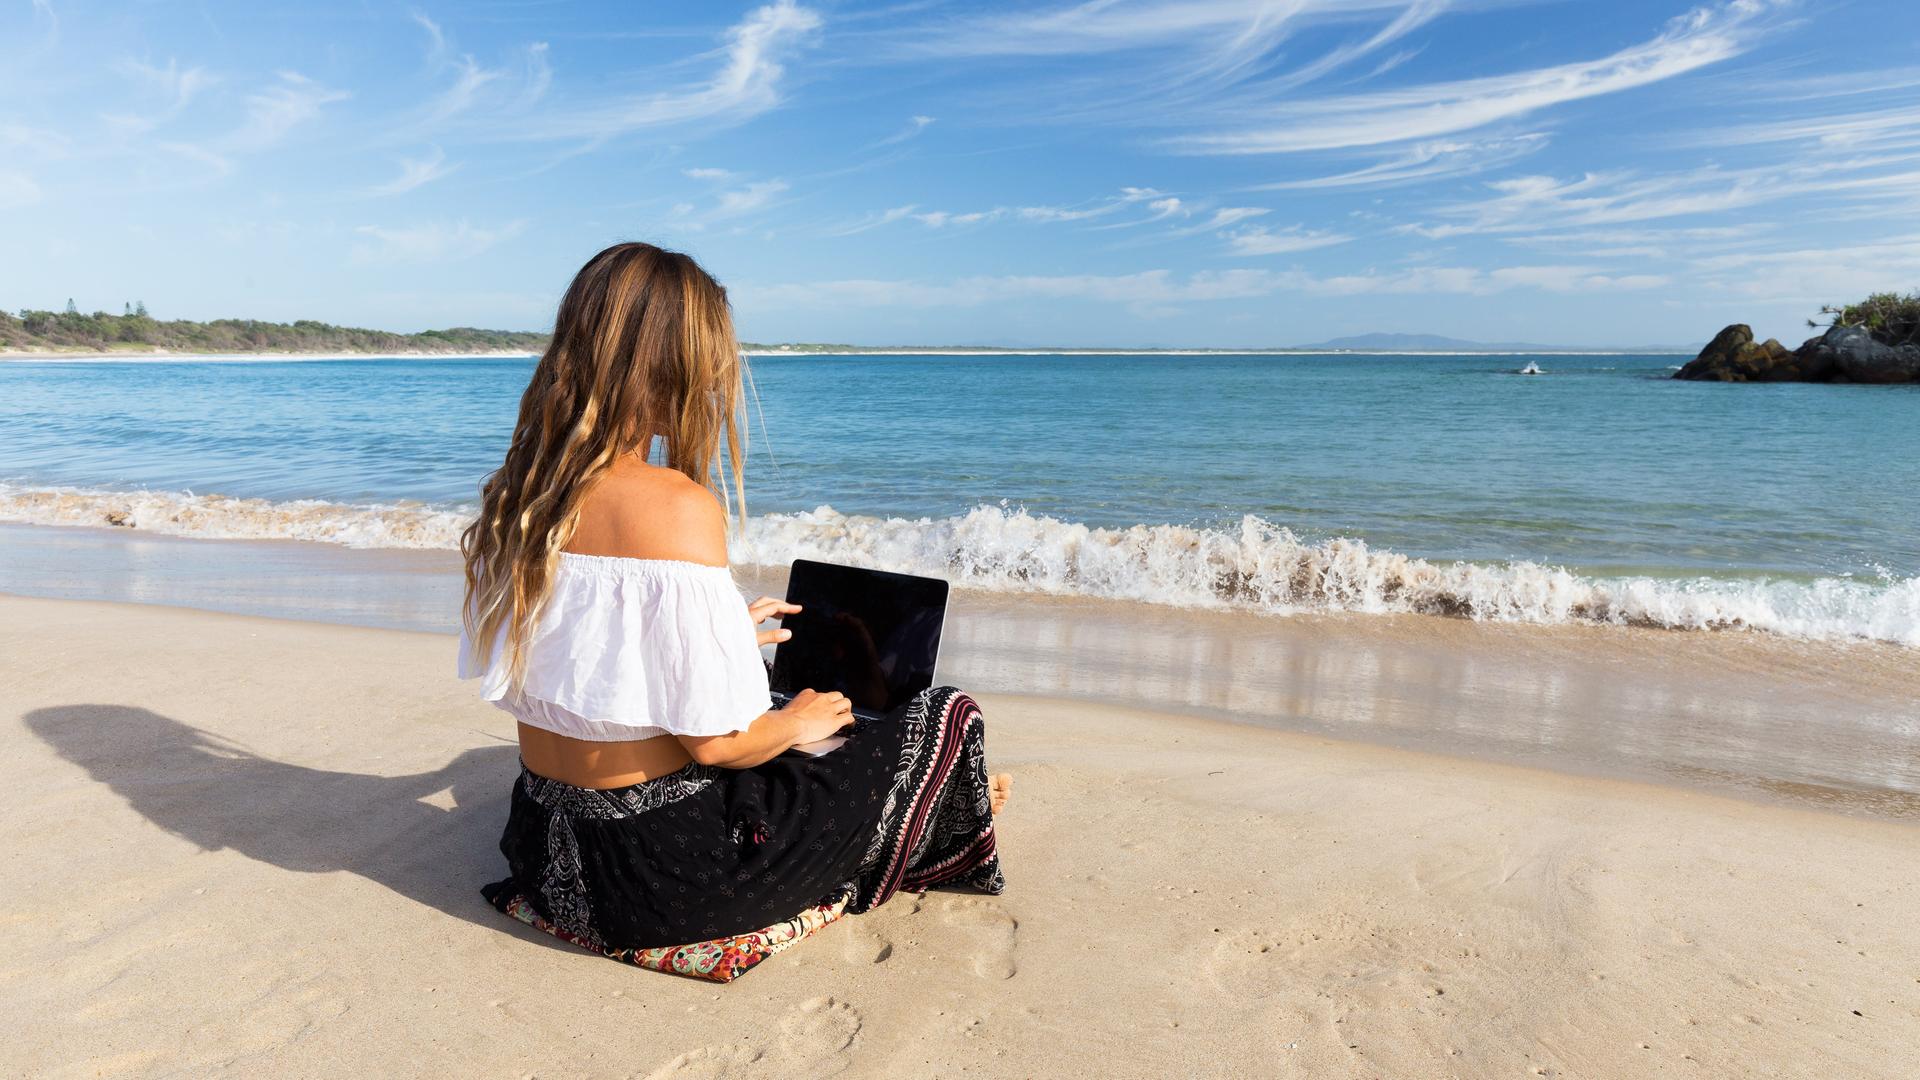 Eine junge Frau sitzt am allein Strand und bedient ein Laptop. Im Hintergrund ist das Meer zu sehen und ein paar Felsformationen im Wasser